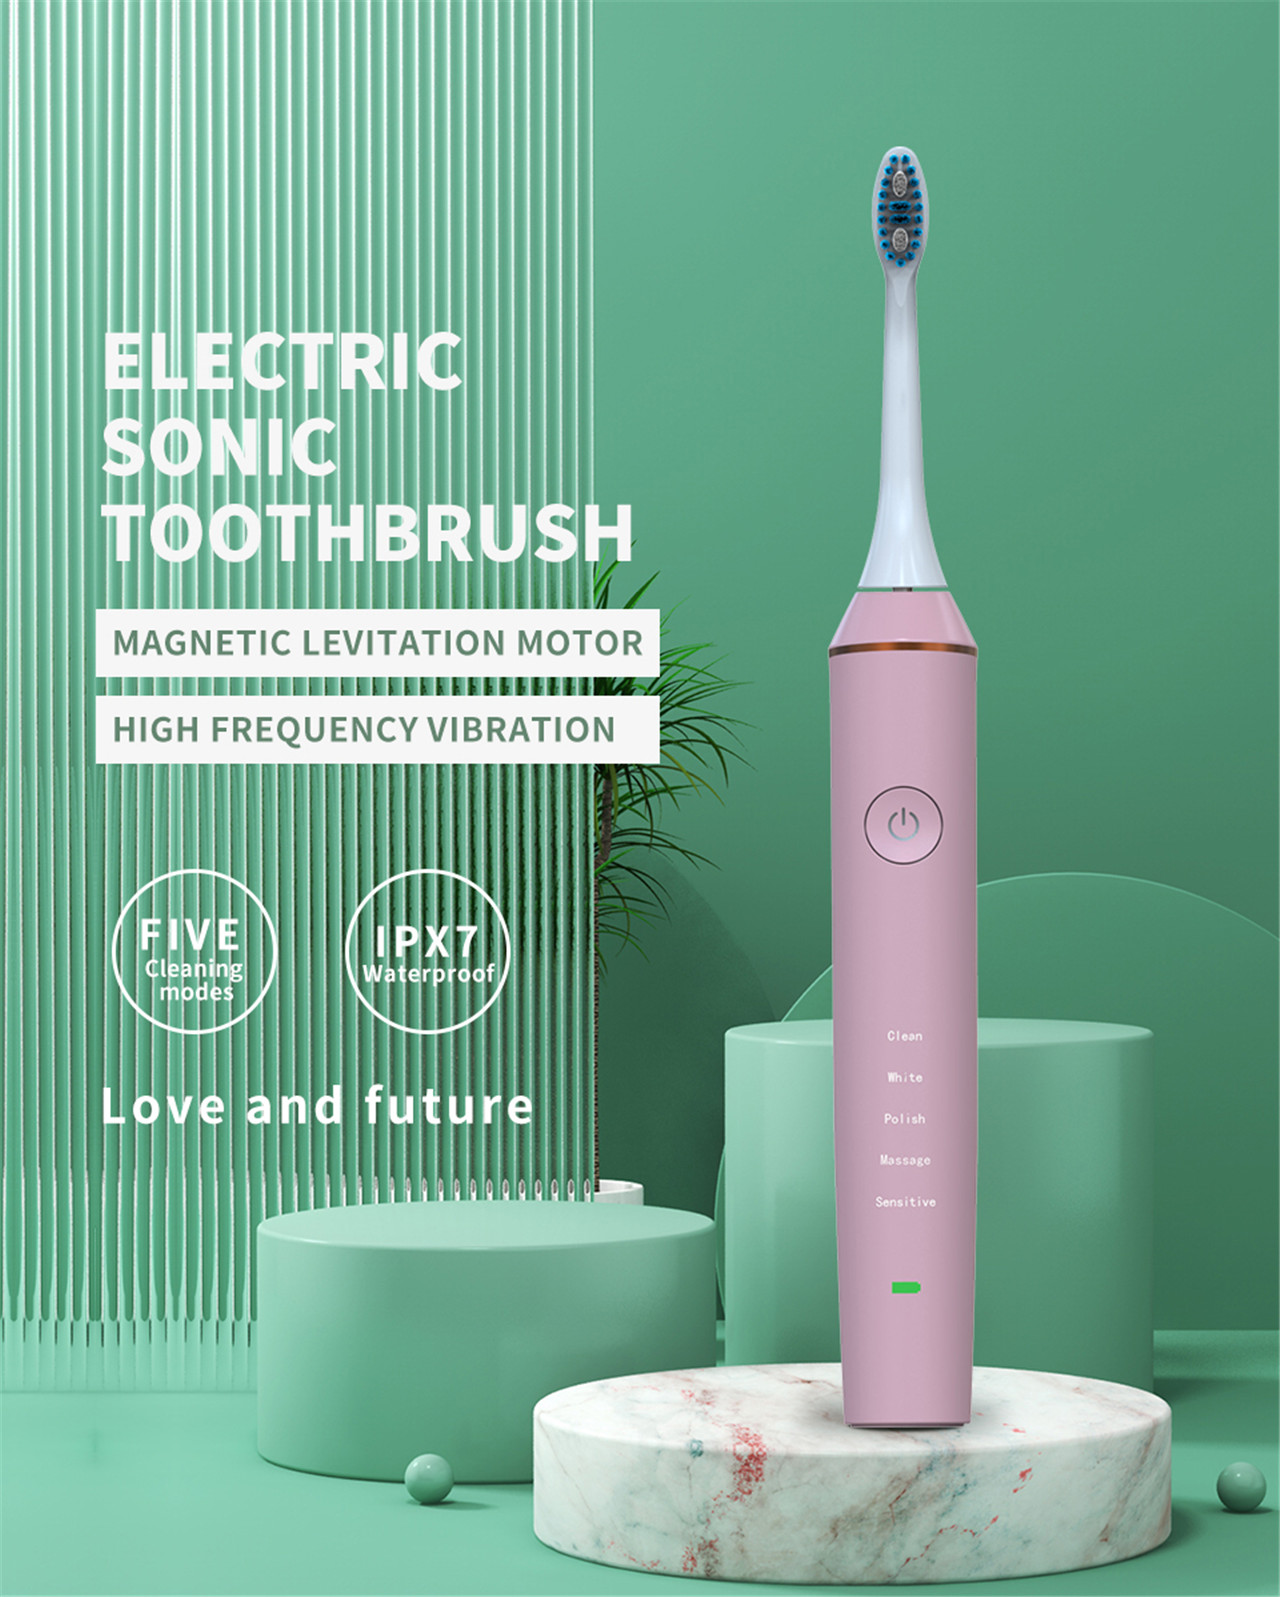 Cepillo de dentes eléctrico sónico electrónico ultrasónico intelixente recargable (1)